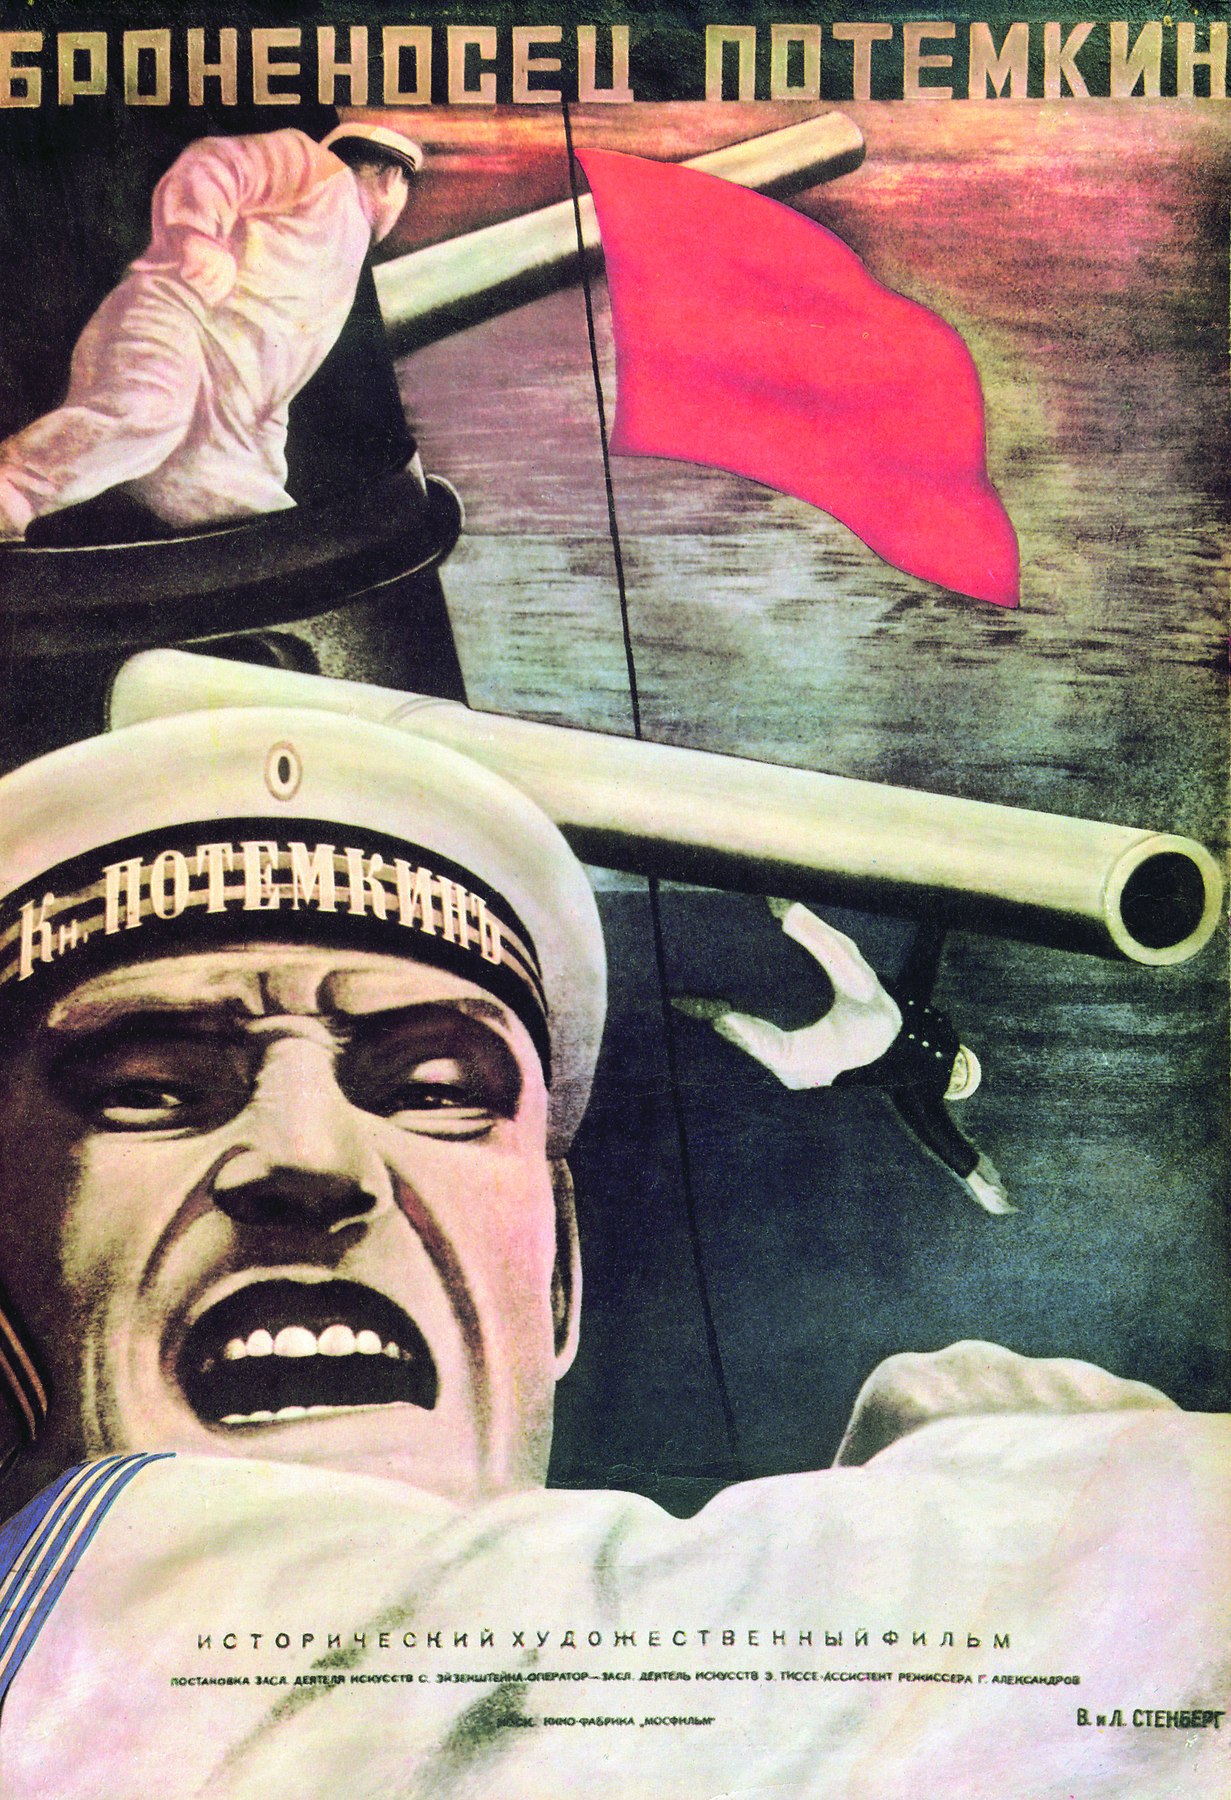 Cartaz de filme. Ilustração de um marinheiro com a boca aberta, testa franzida e olhos serrados. Ao fundo um marinheiro no topo de uma estrutura e outro caindo no mar. Entre eles uma bandeira vermelha.